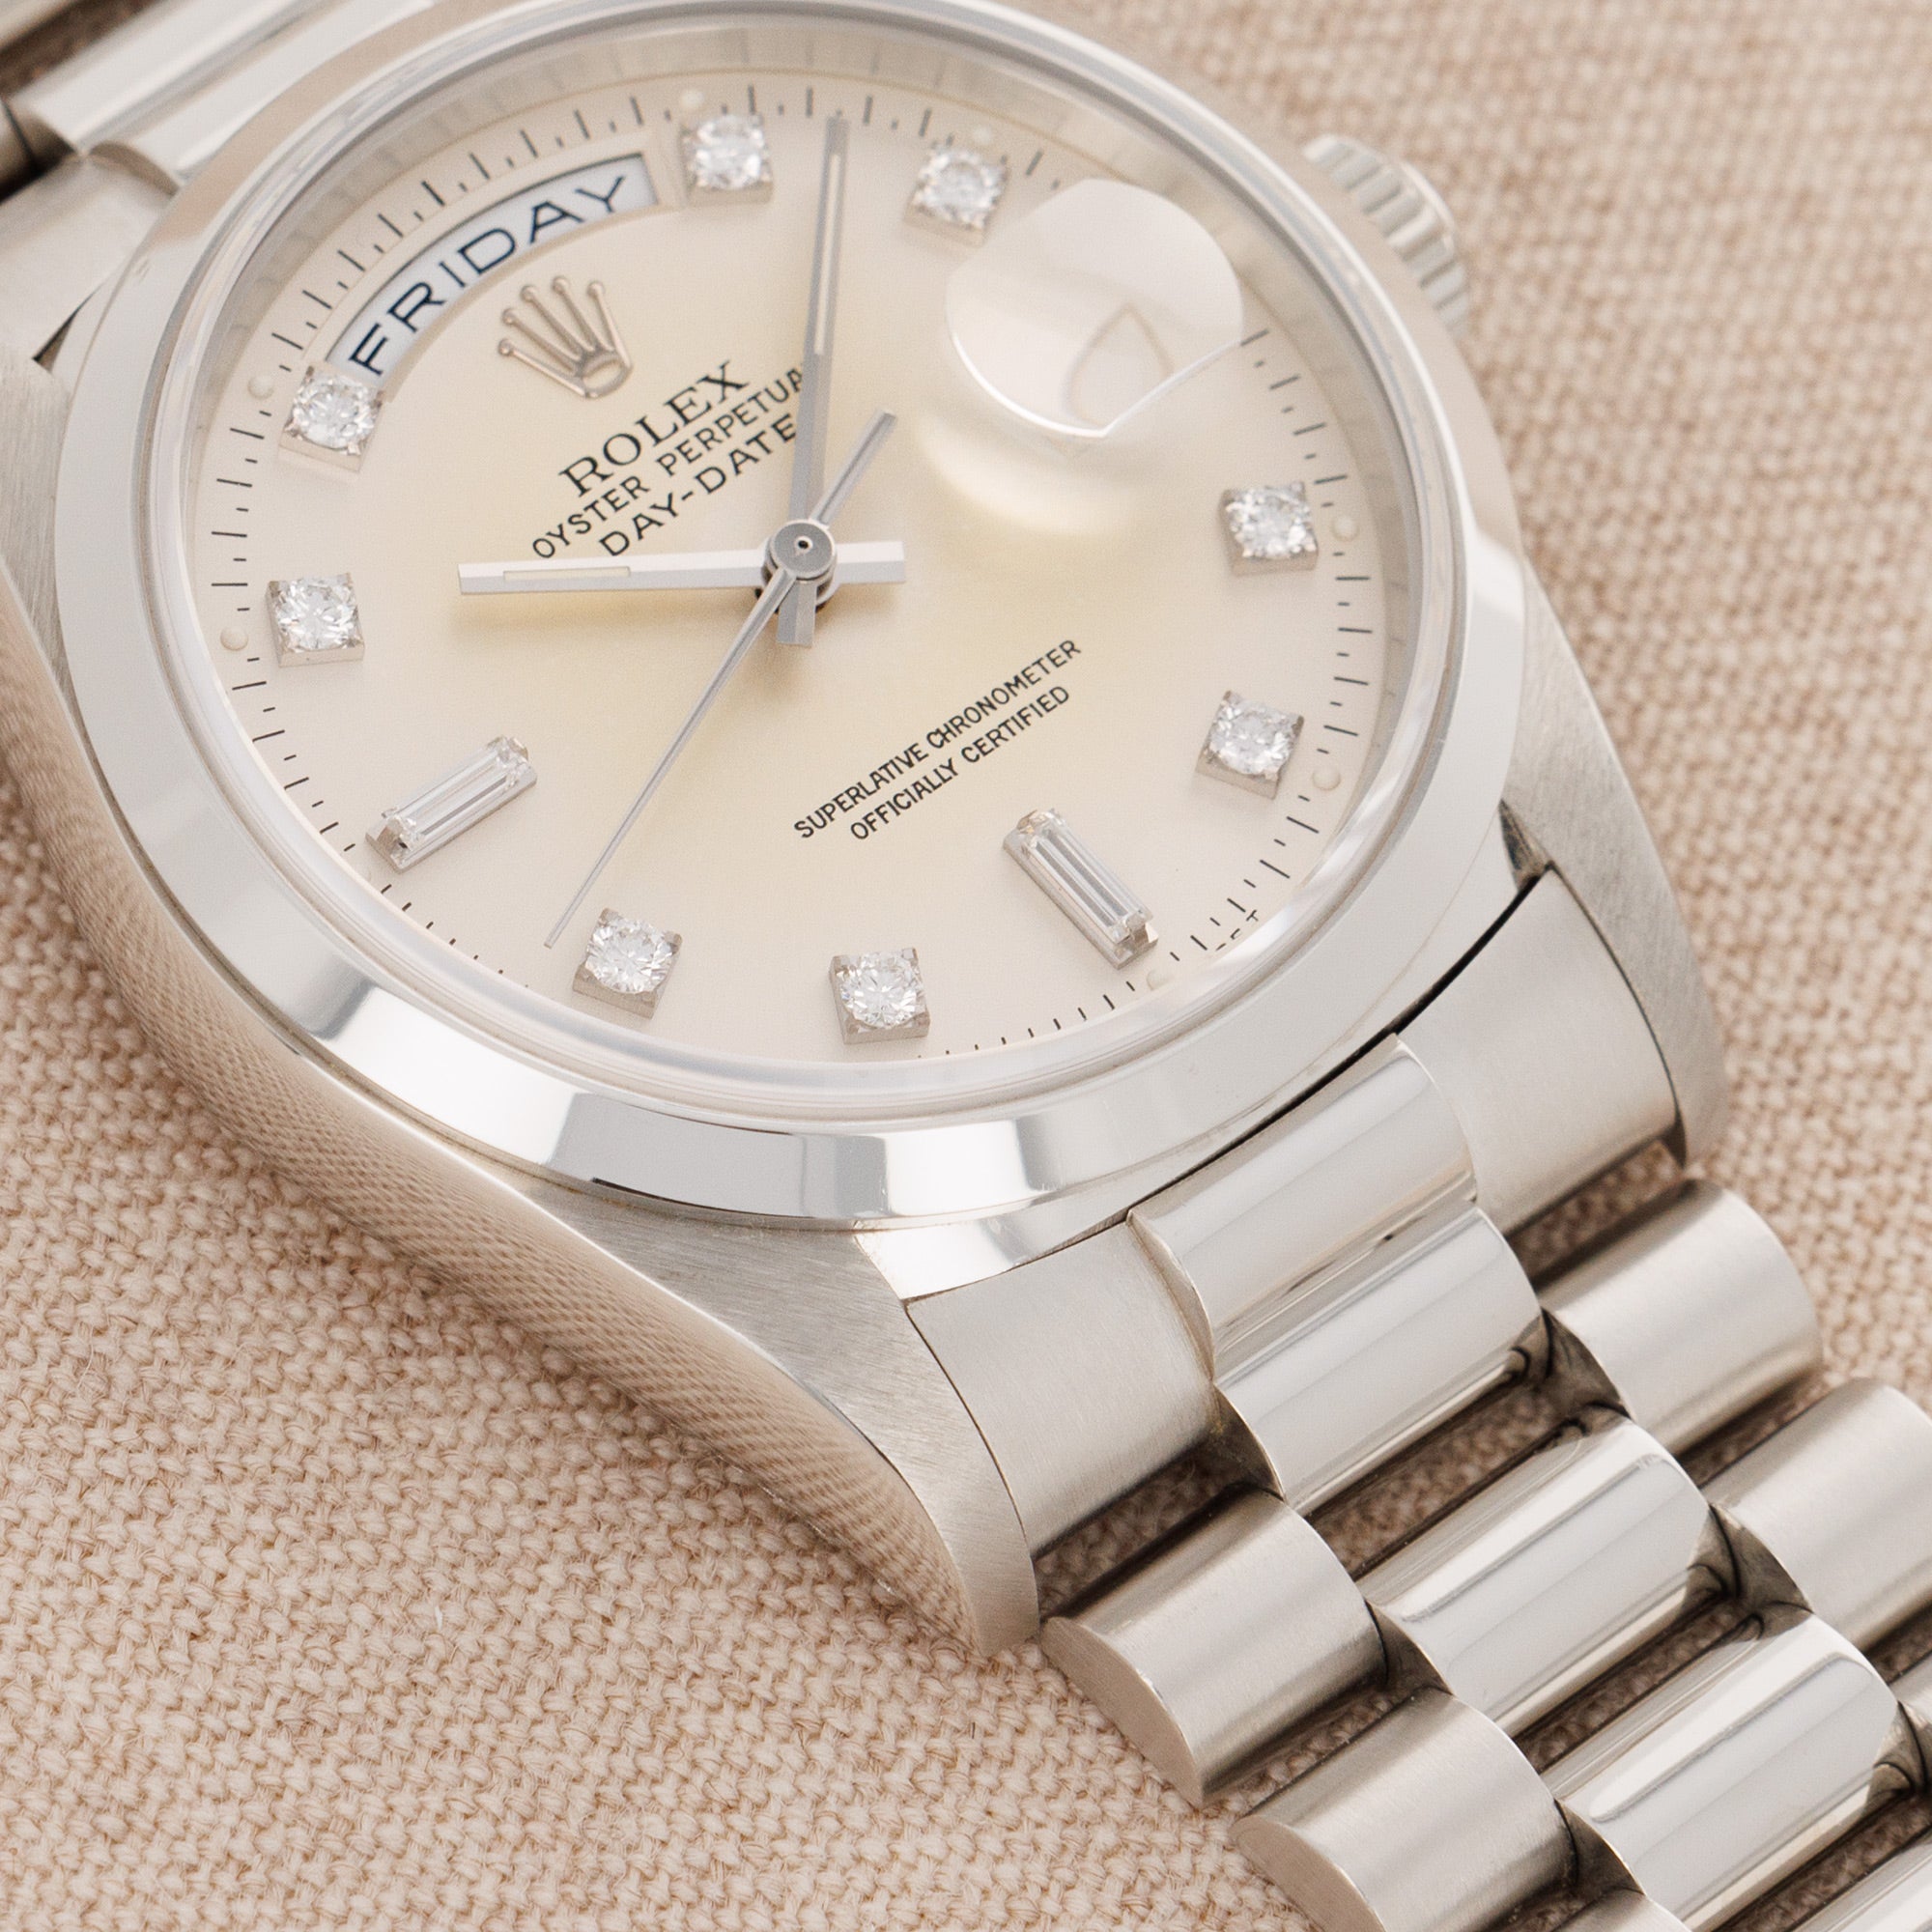 Rolex - Rolex Platinum Day-Date Ref. 18206 - The Keystone Watches